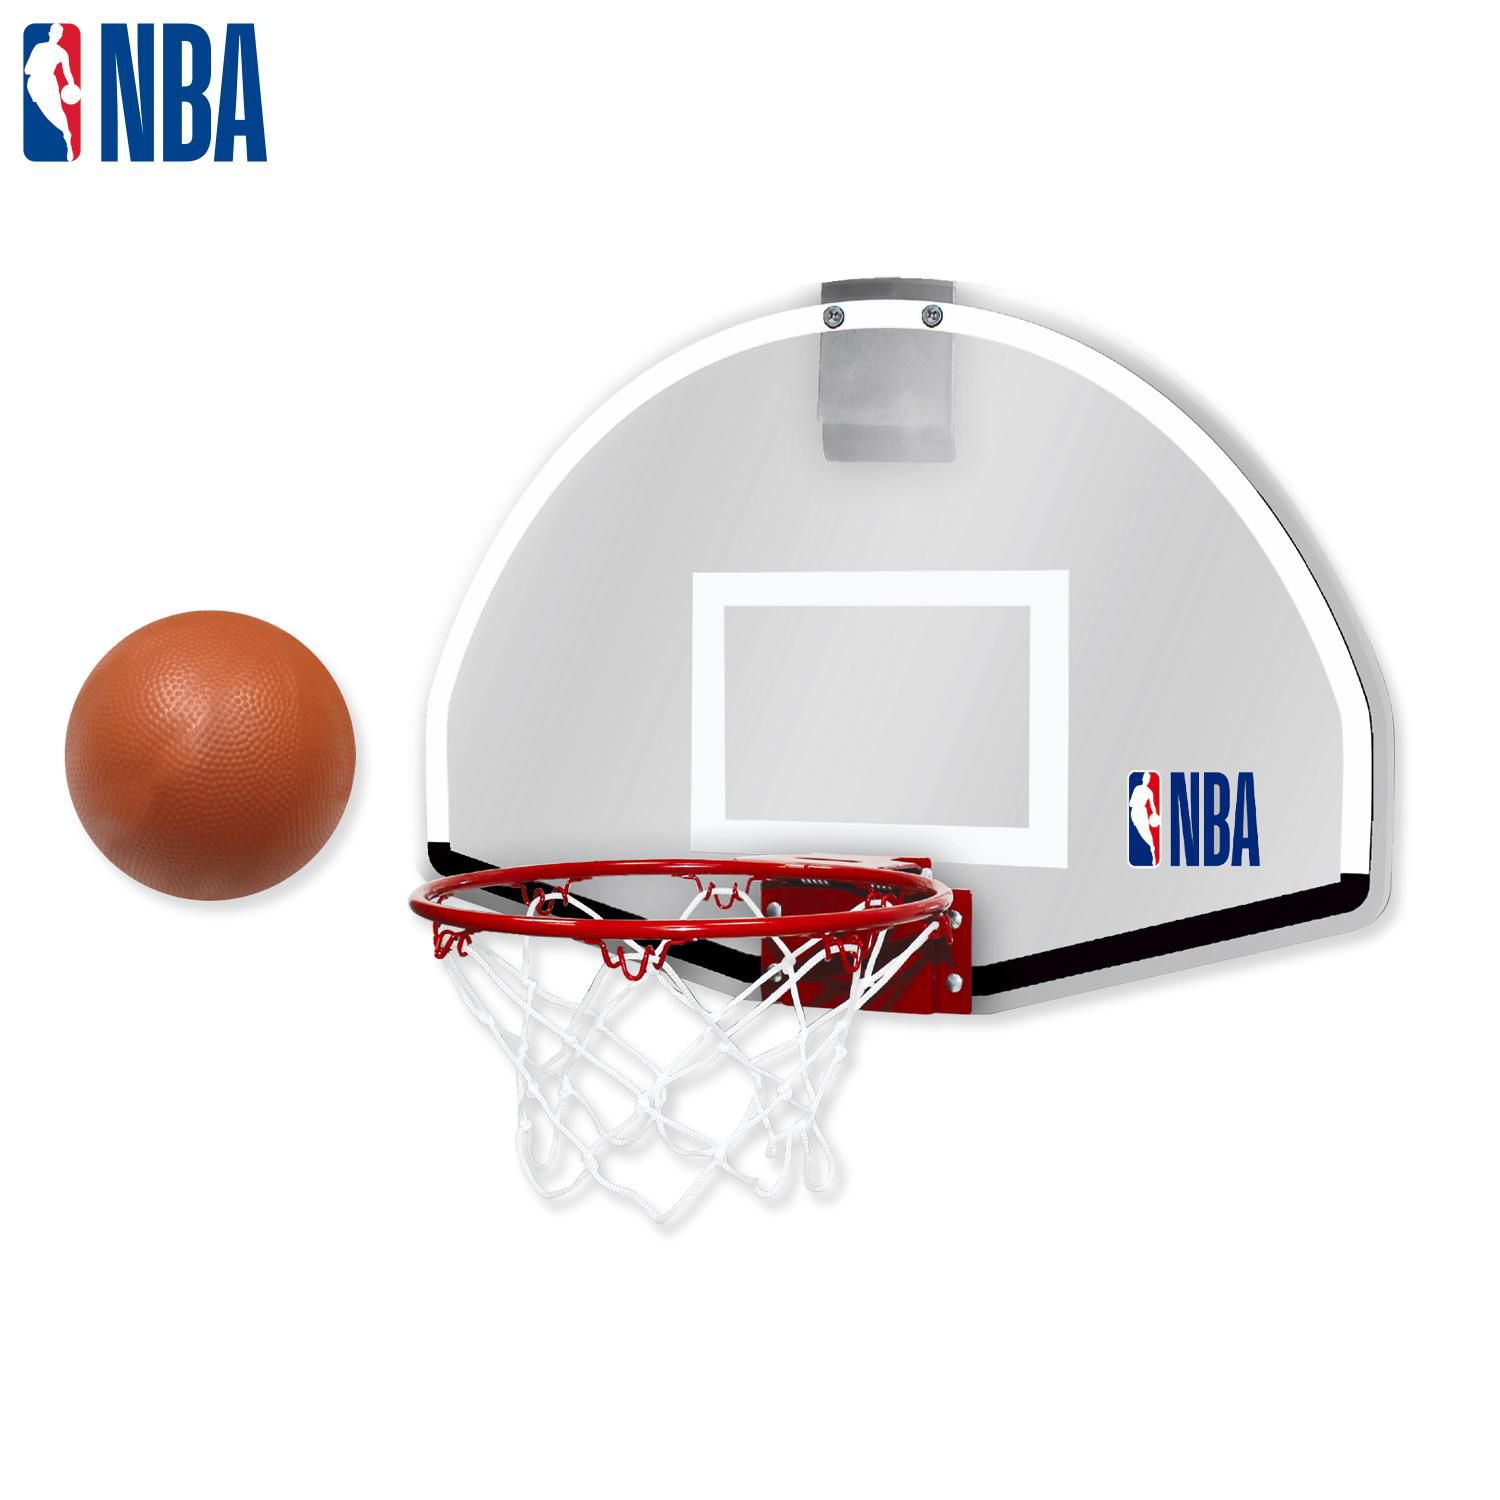 Panier et anneau de basket-ball mural de 18 po Elite de la NBA